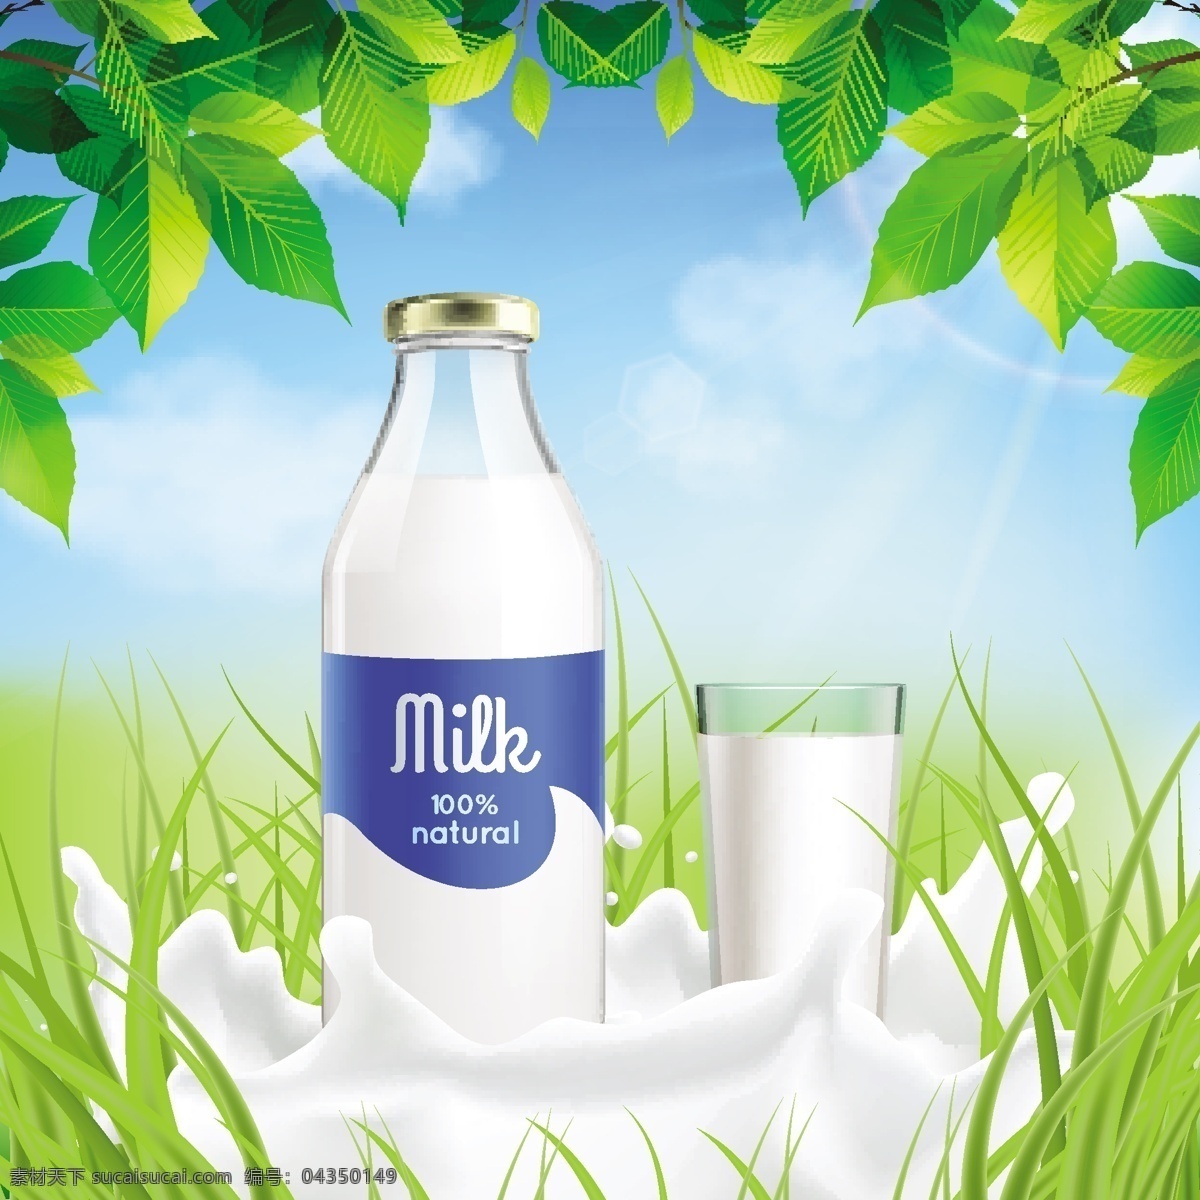 牛奶宣传海报 奶粉 奶酪 牛初乳 生牛乳 牛奶传单 纯 鲜牛奶 饮料 牛奶 牛奶制品 牛奶广告 牛奶宣传 海报